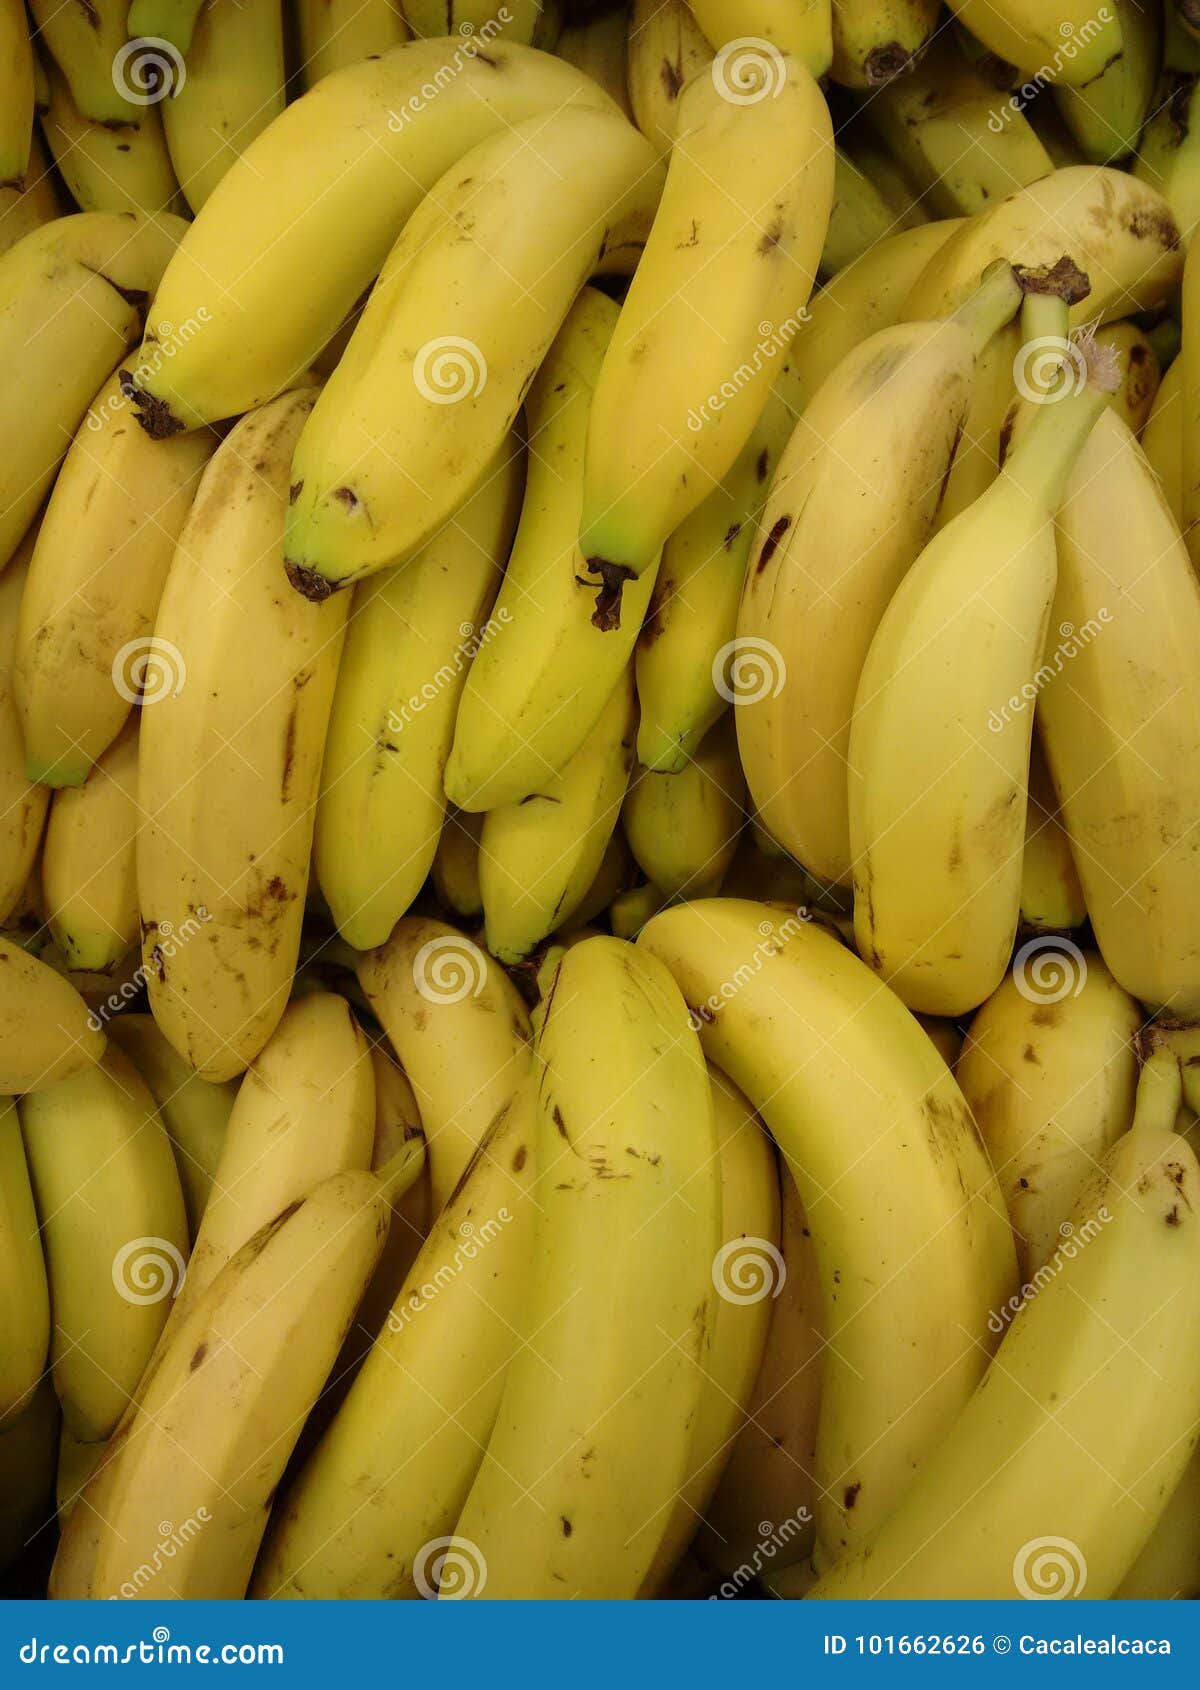 banana or yellow plantain